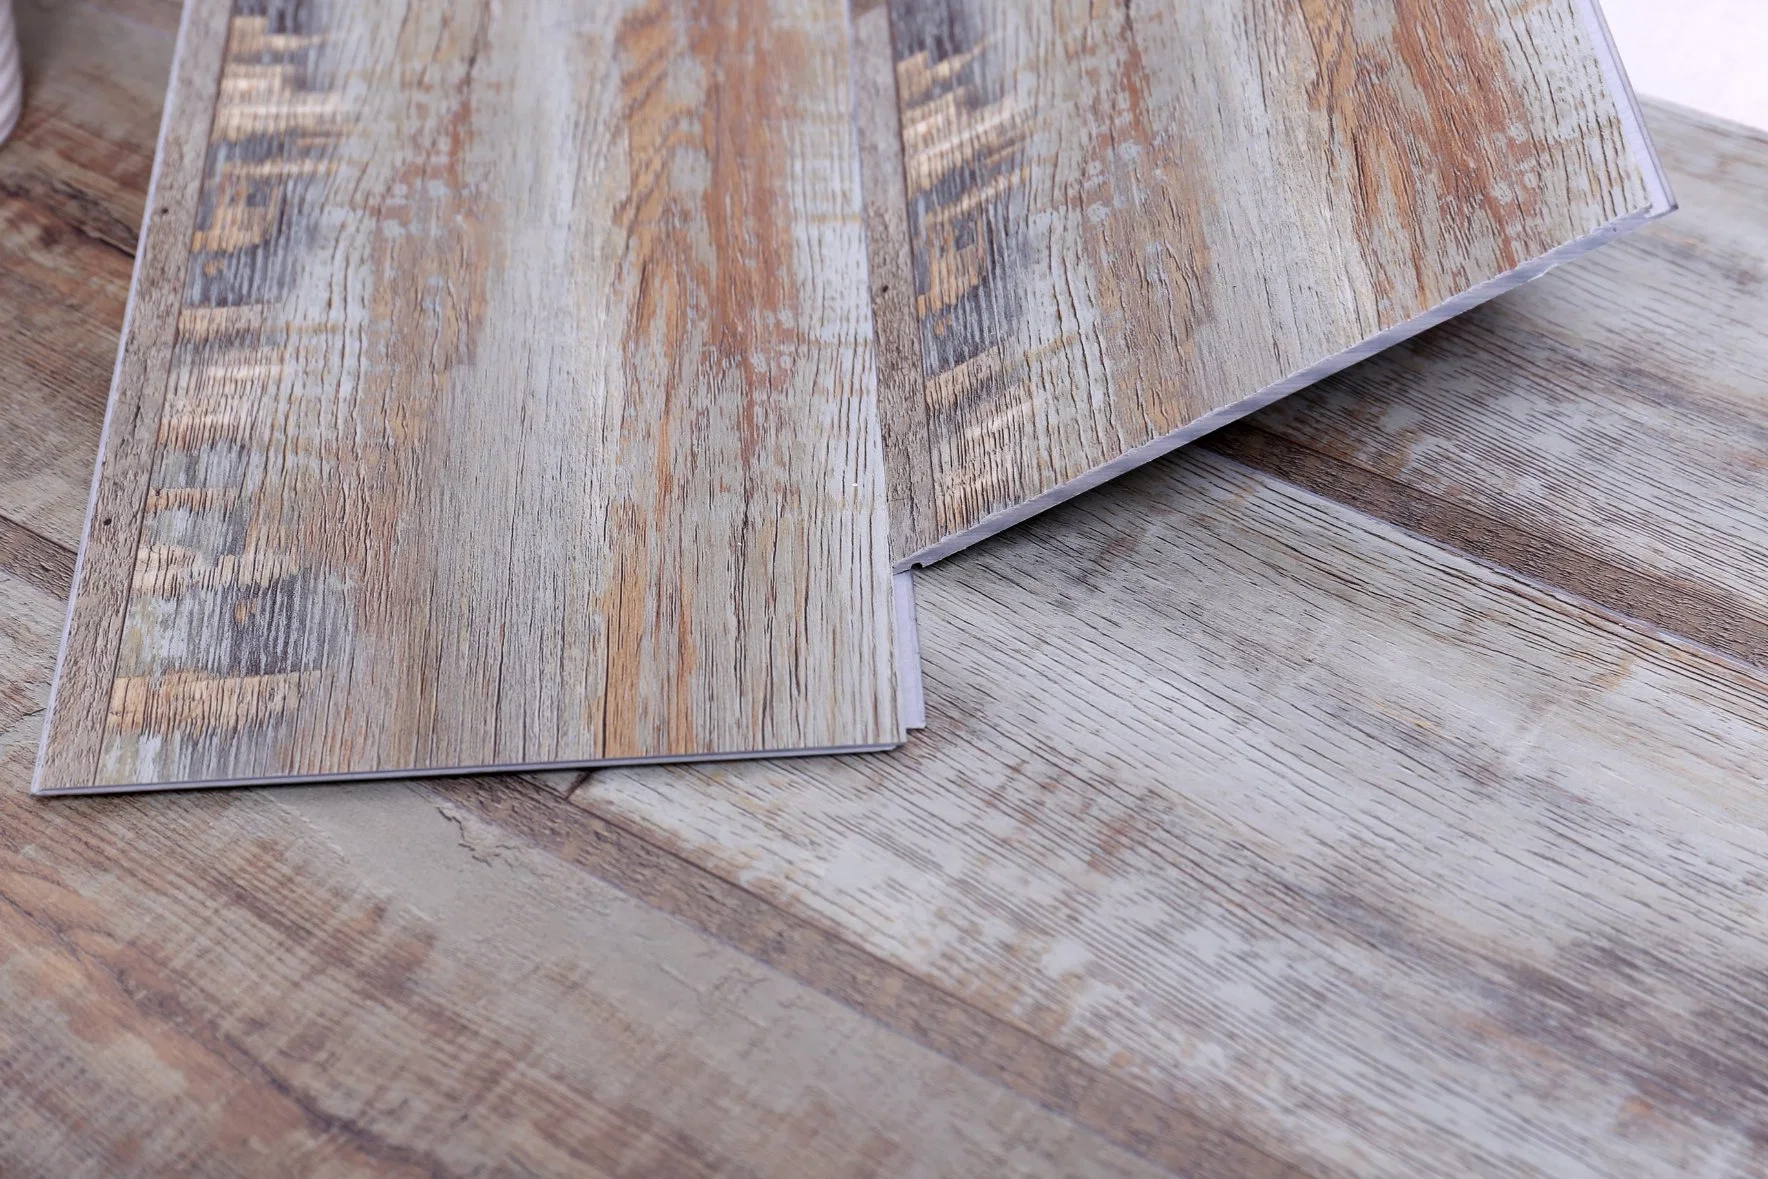 Unilin Click Wooden Color Waterproof and Moth-Proof of Spc Luxury Rigid Vinyl Plank Flooring Tiles